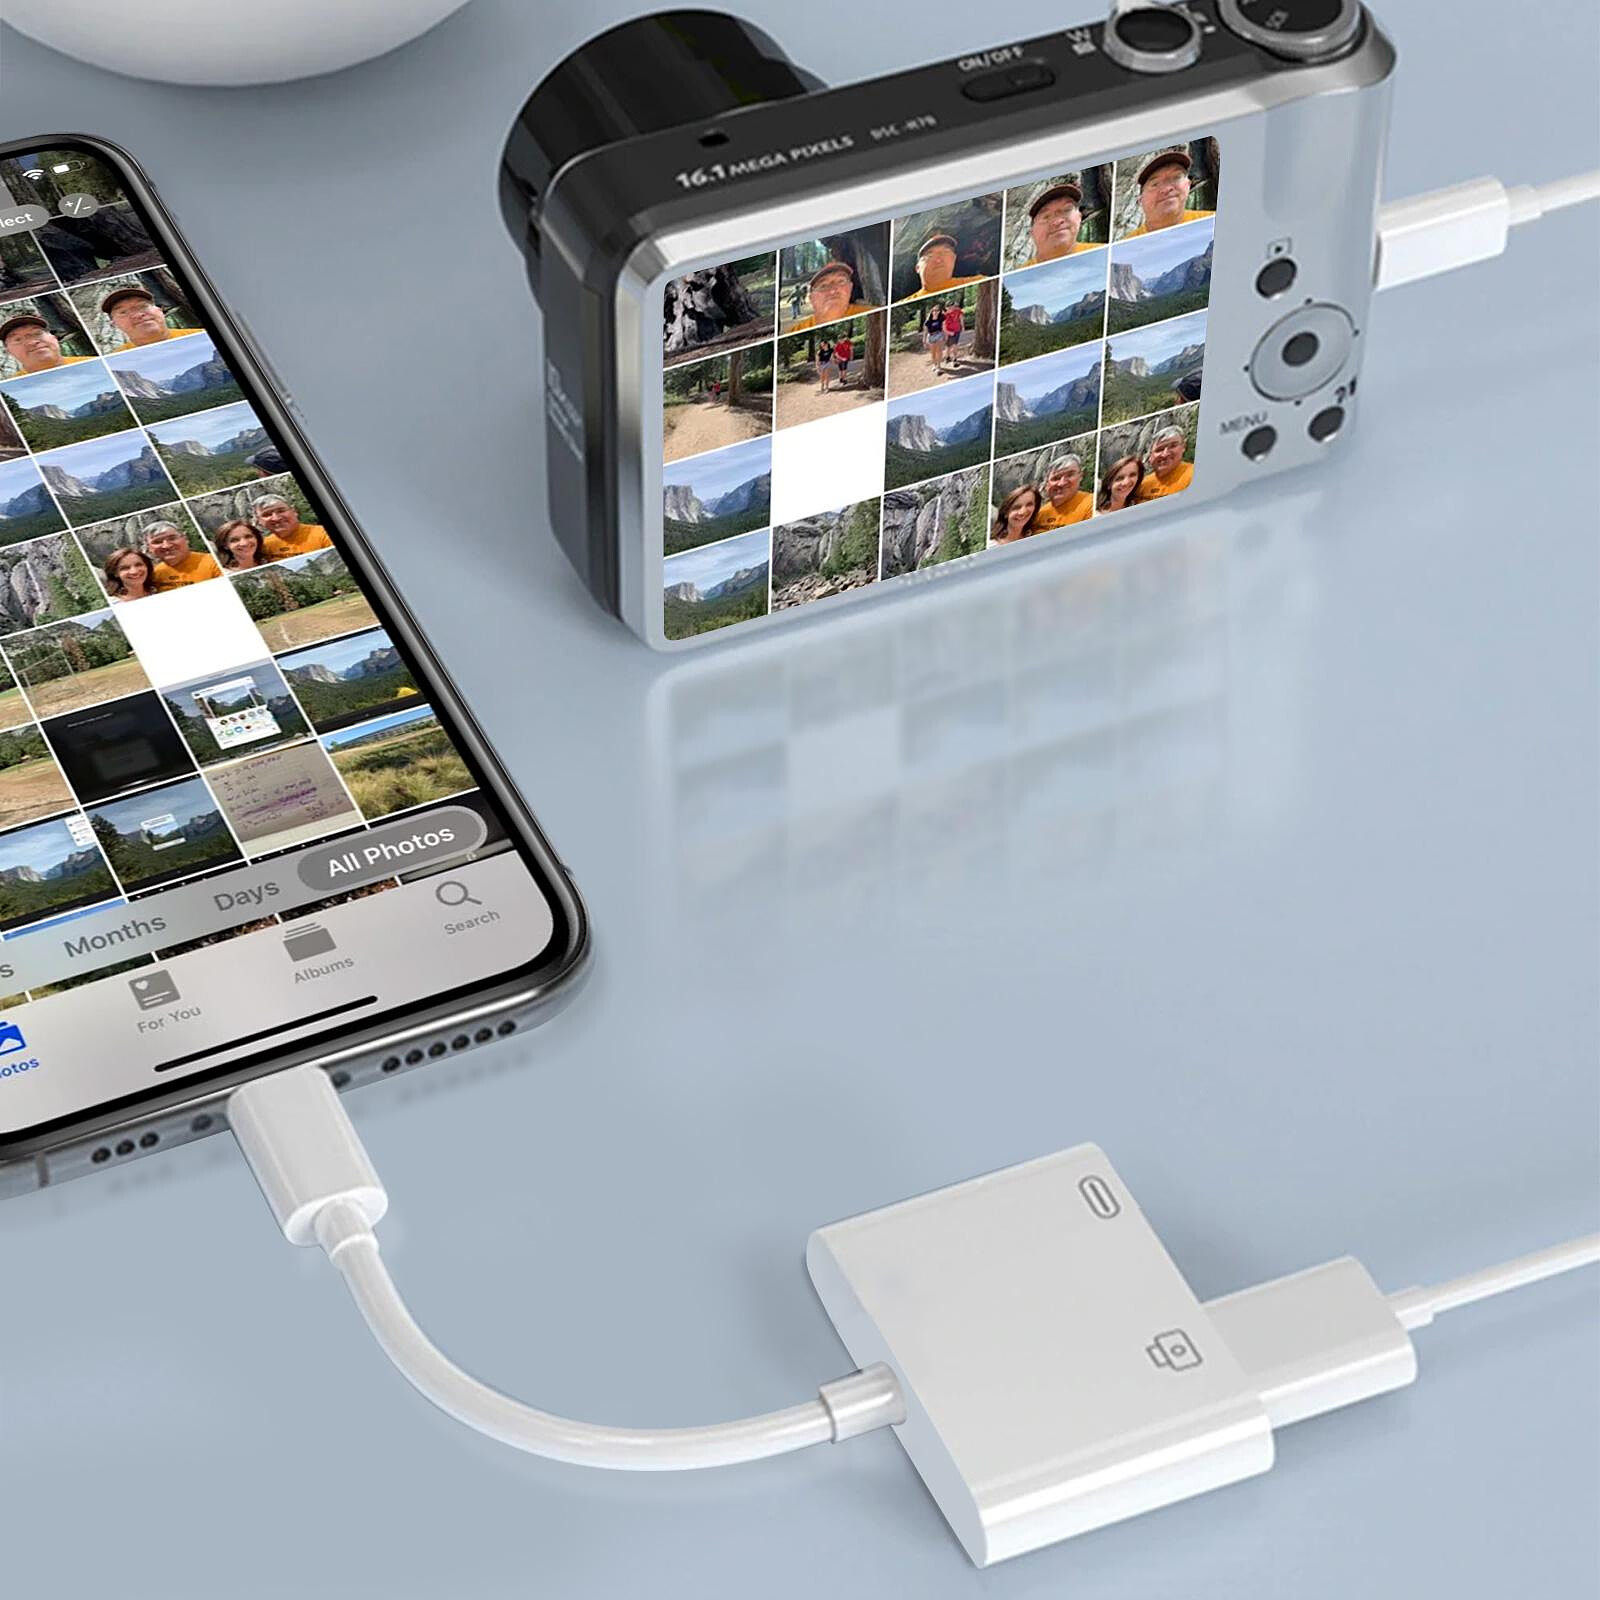 Generic Câble pour Apple iPhone Rapide Câbles de Chargeur USB à prix pas  cher